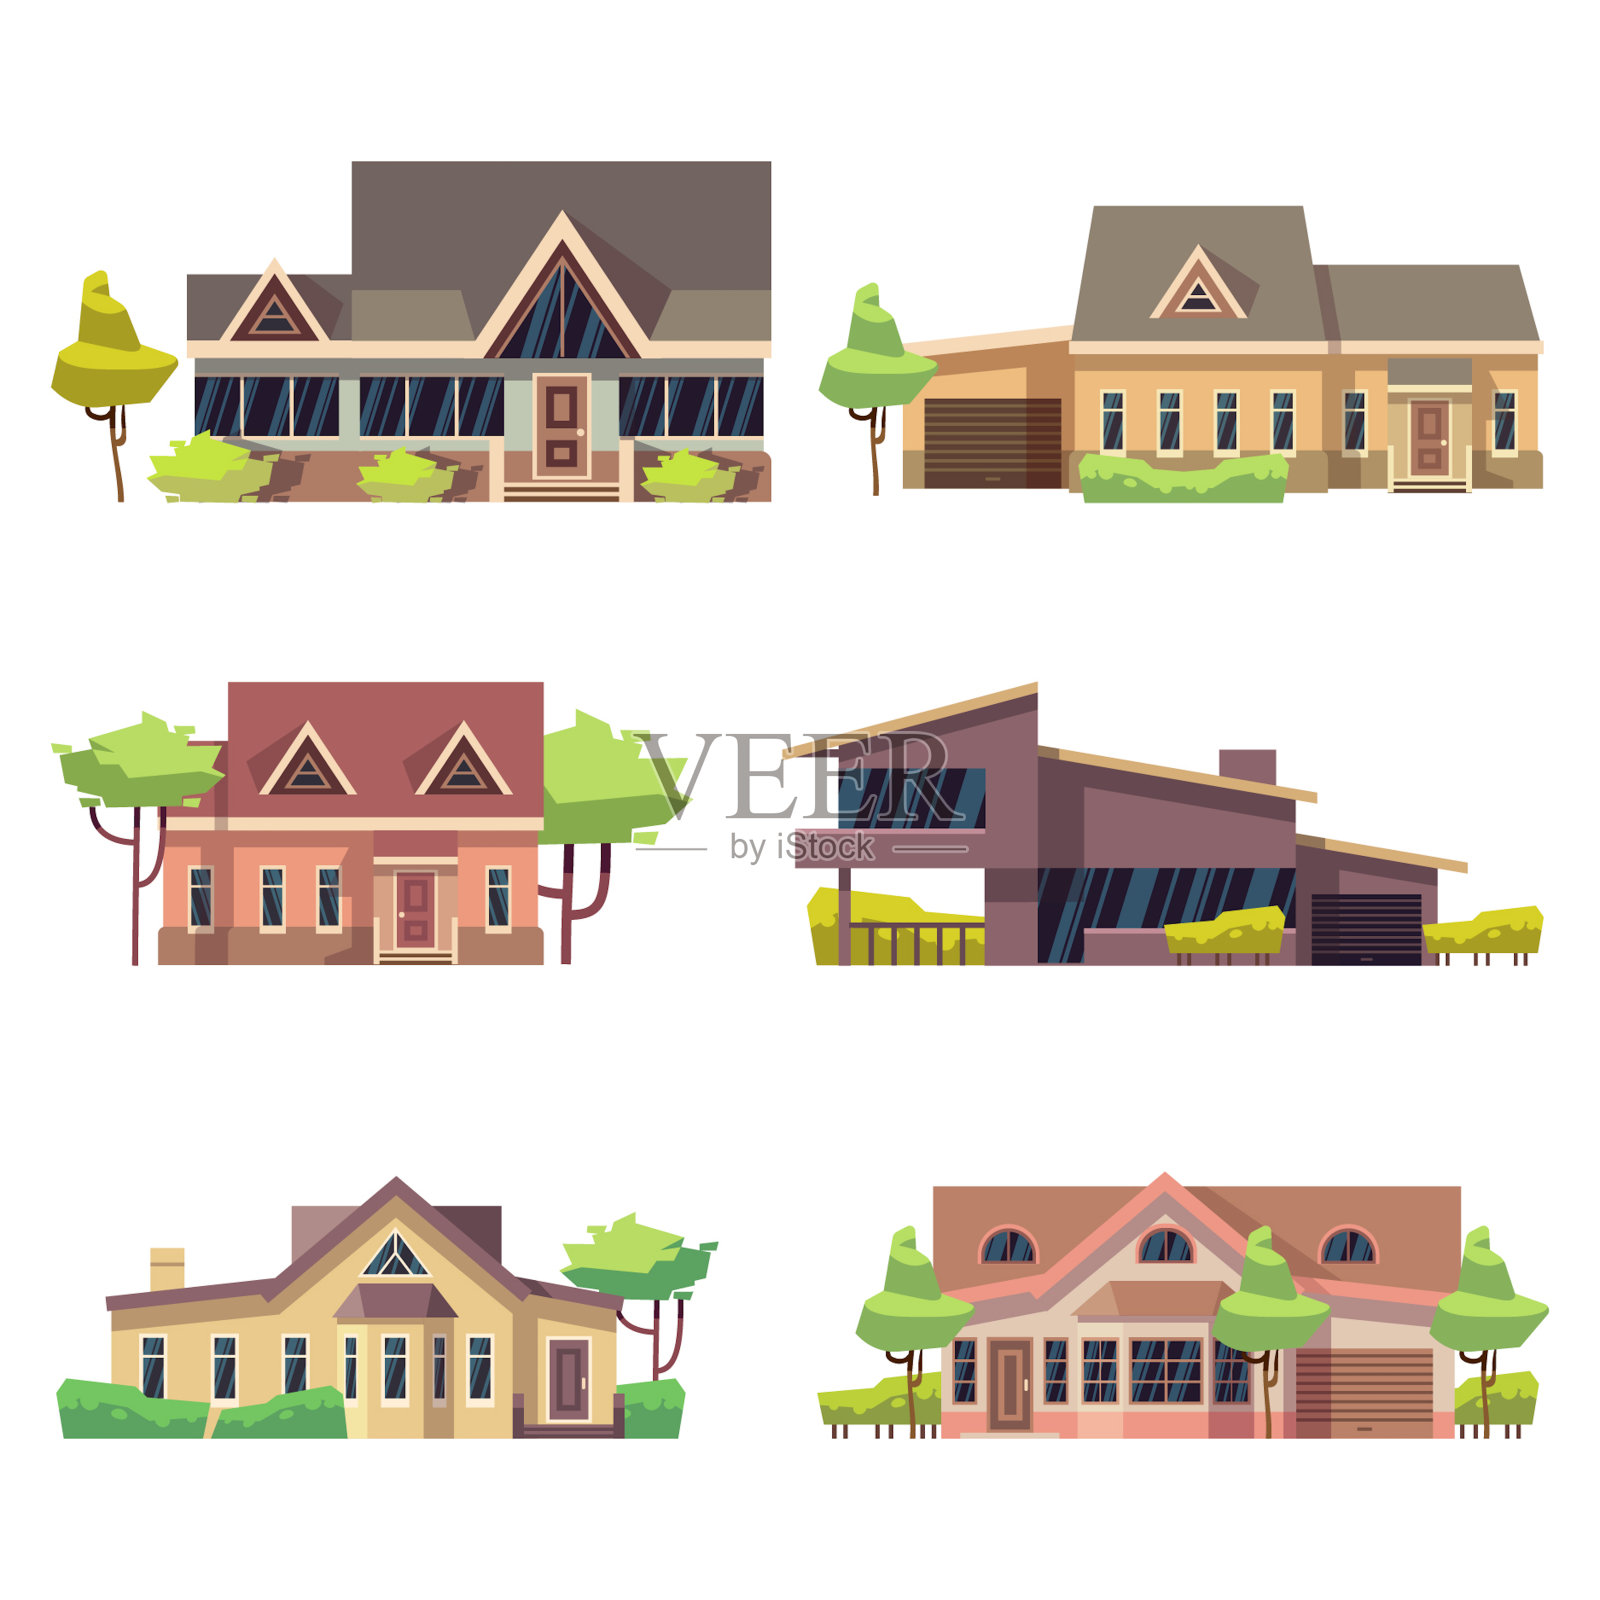 私人住宅村舍的标志。彩色平面矢量图插画图片素材